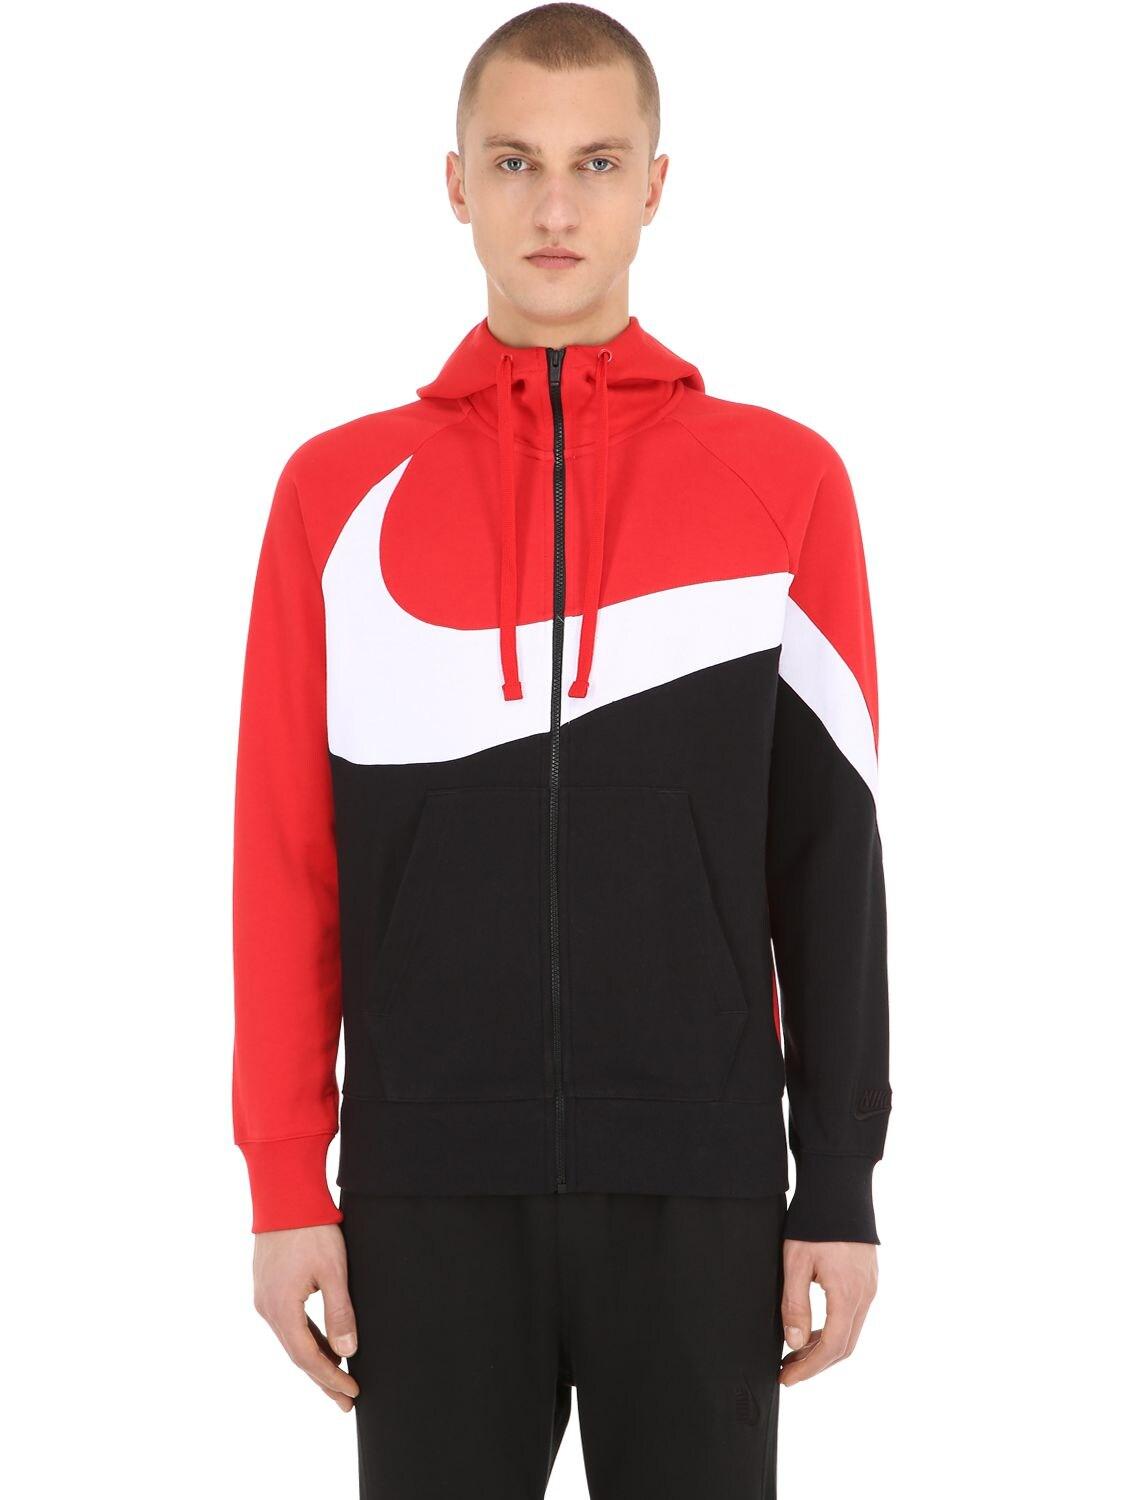 Nike Big Swoosh Zip-up Sweatshirt Hoodie in Black/Red (Red) for Men - Lyst